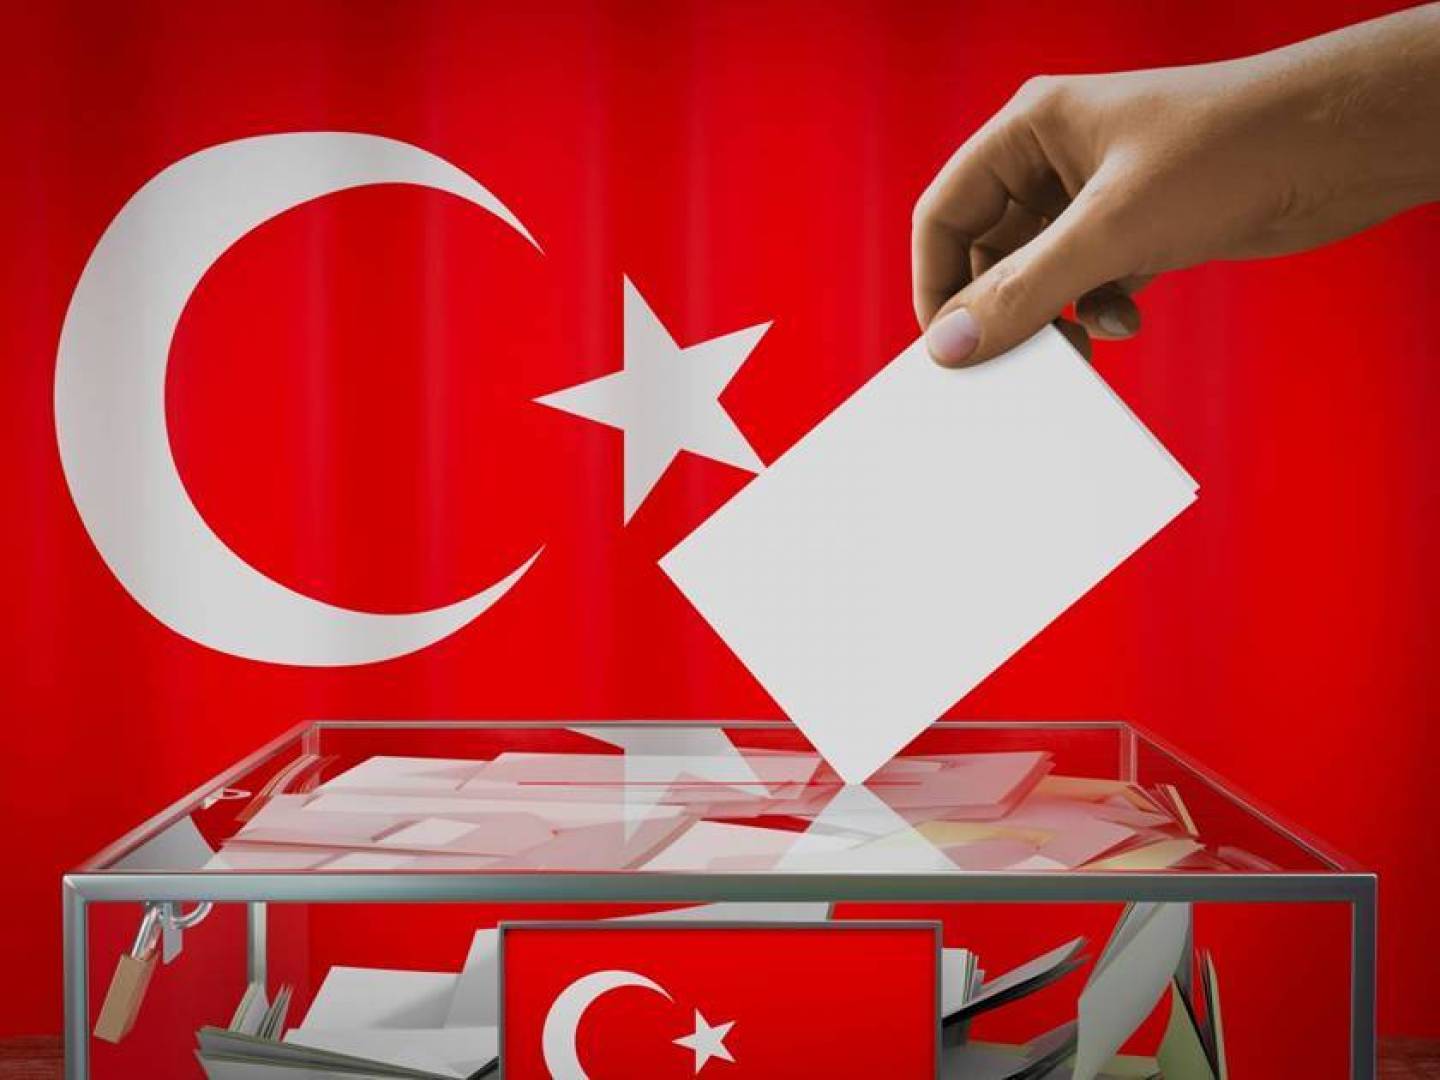 الجولة الثانية للإنتخابات التركية في ميزان الصراعات الداخلية والدولية 